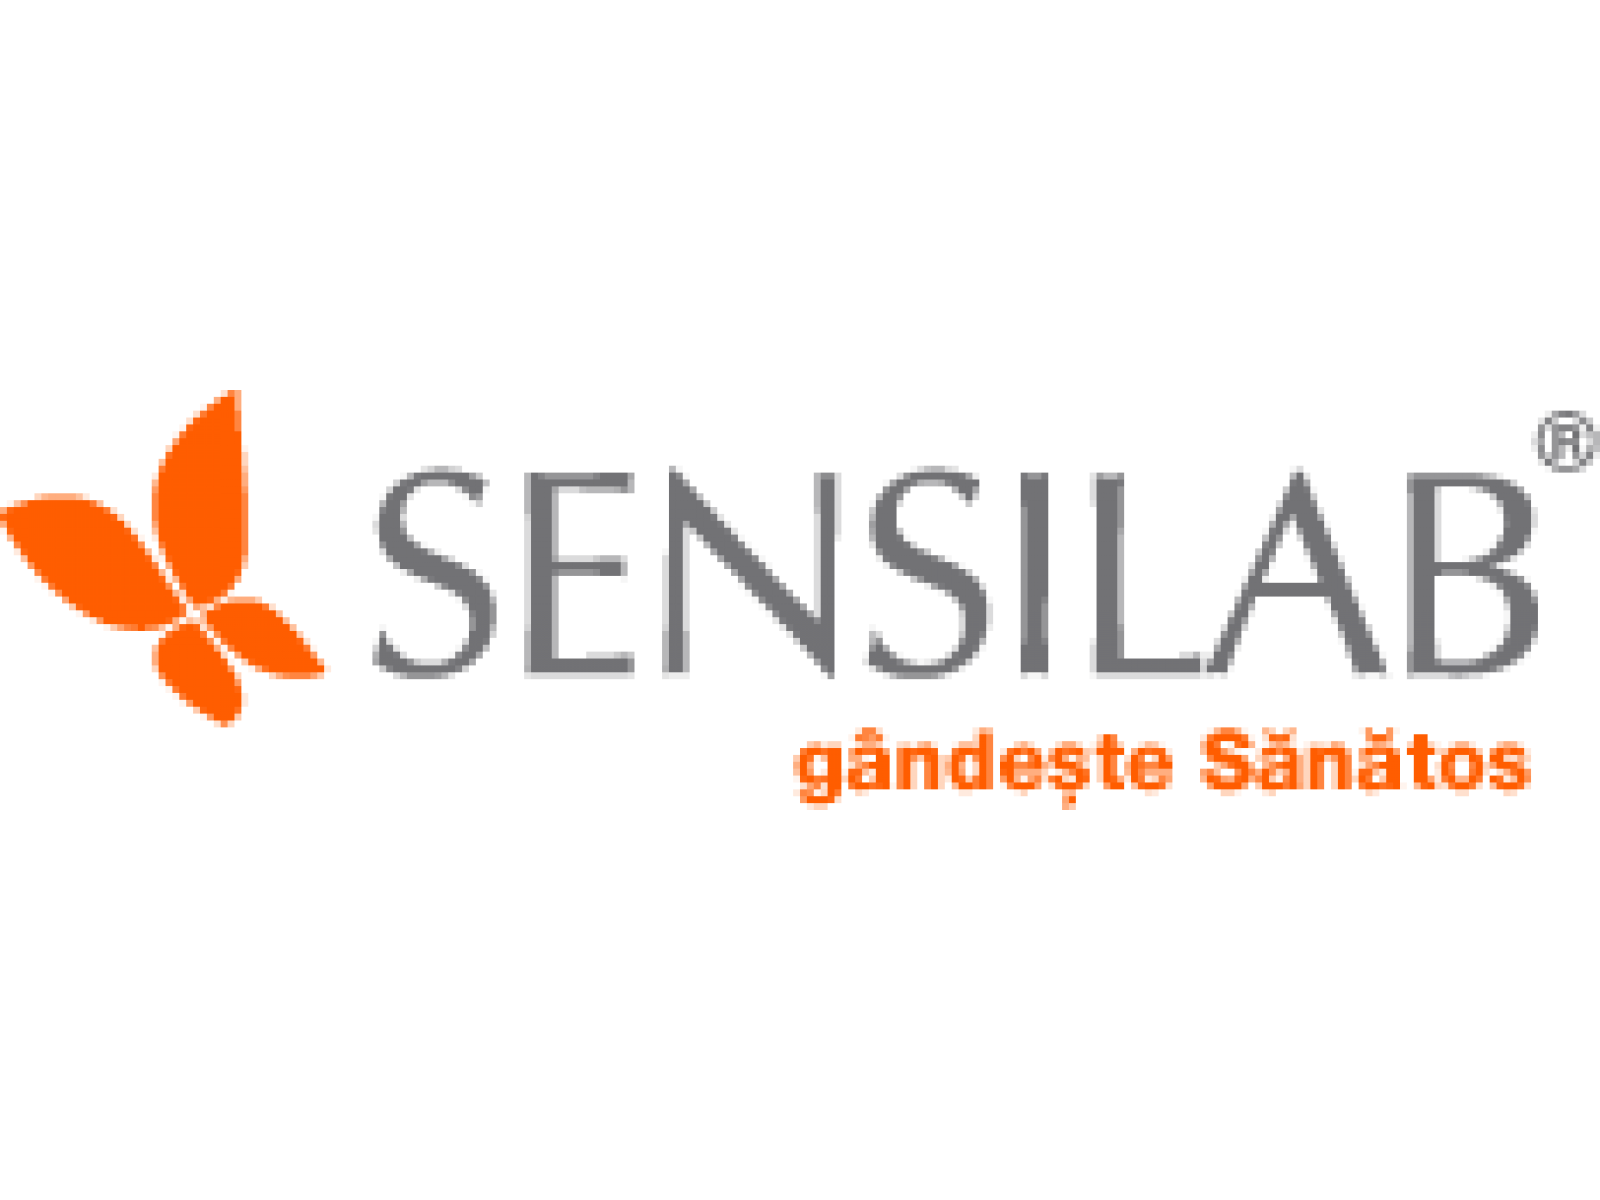 Sensilab - logo_sensilab.png